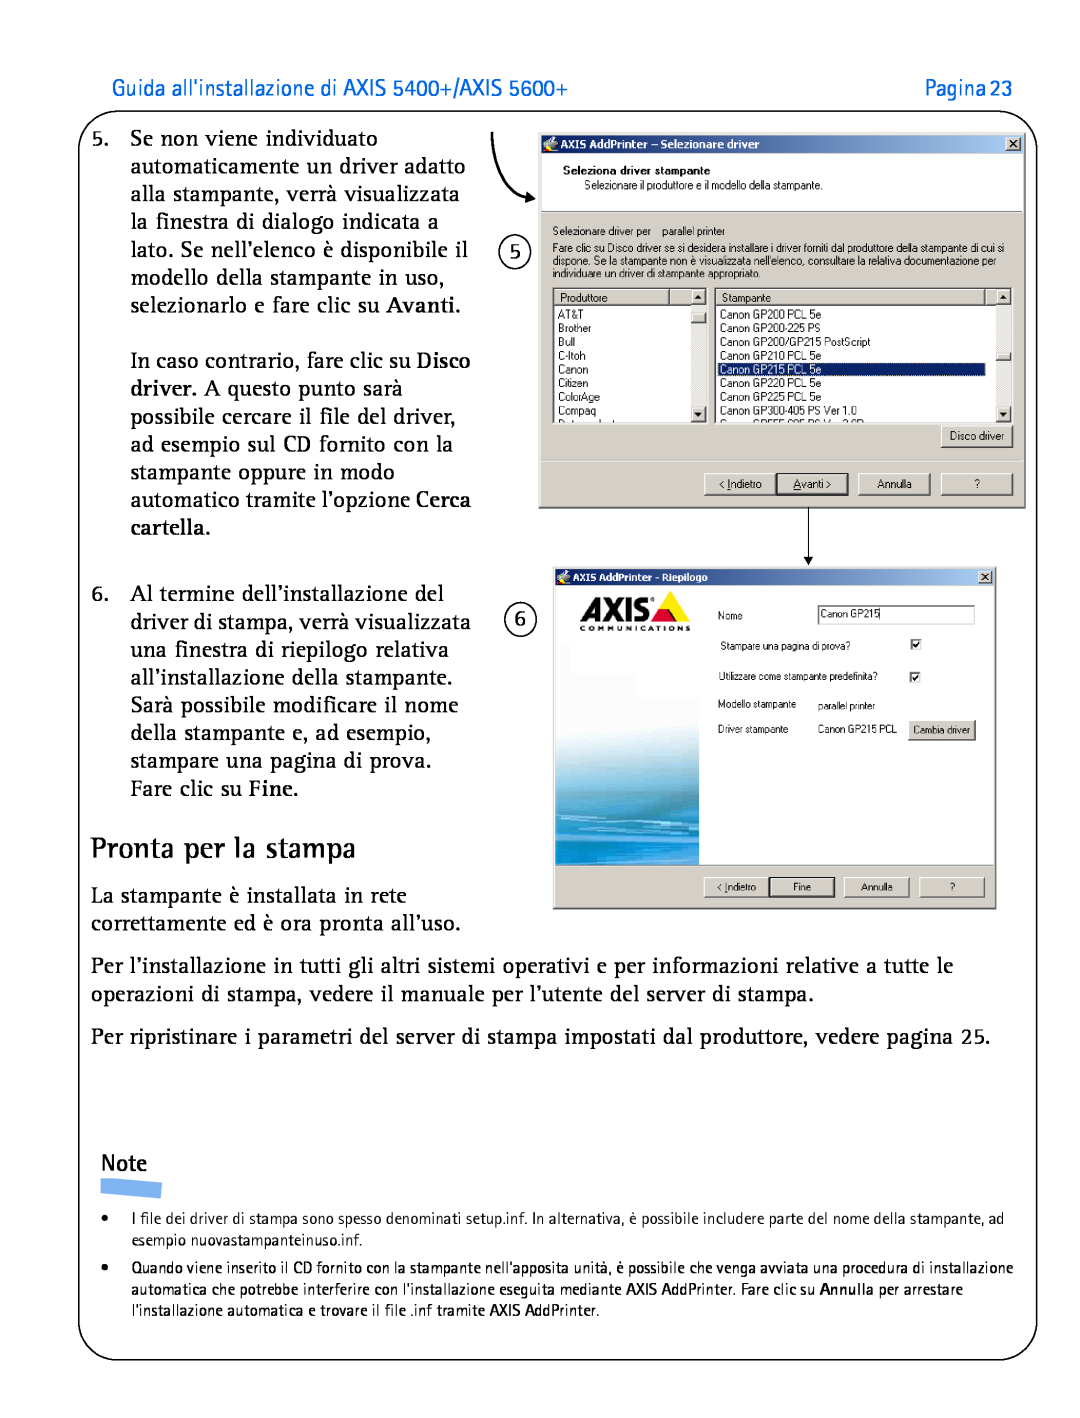 Axis Communications manual Pronta per la stampa, Guida allinstallazione di AXIS 5400+/AXIS 5600+ 